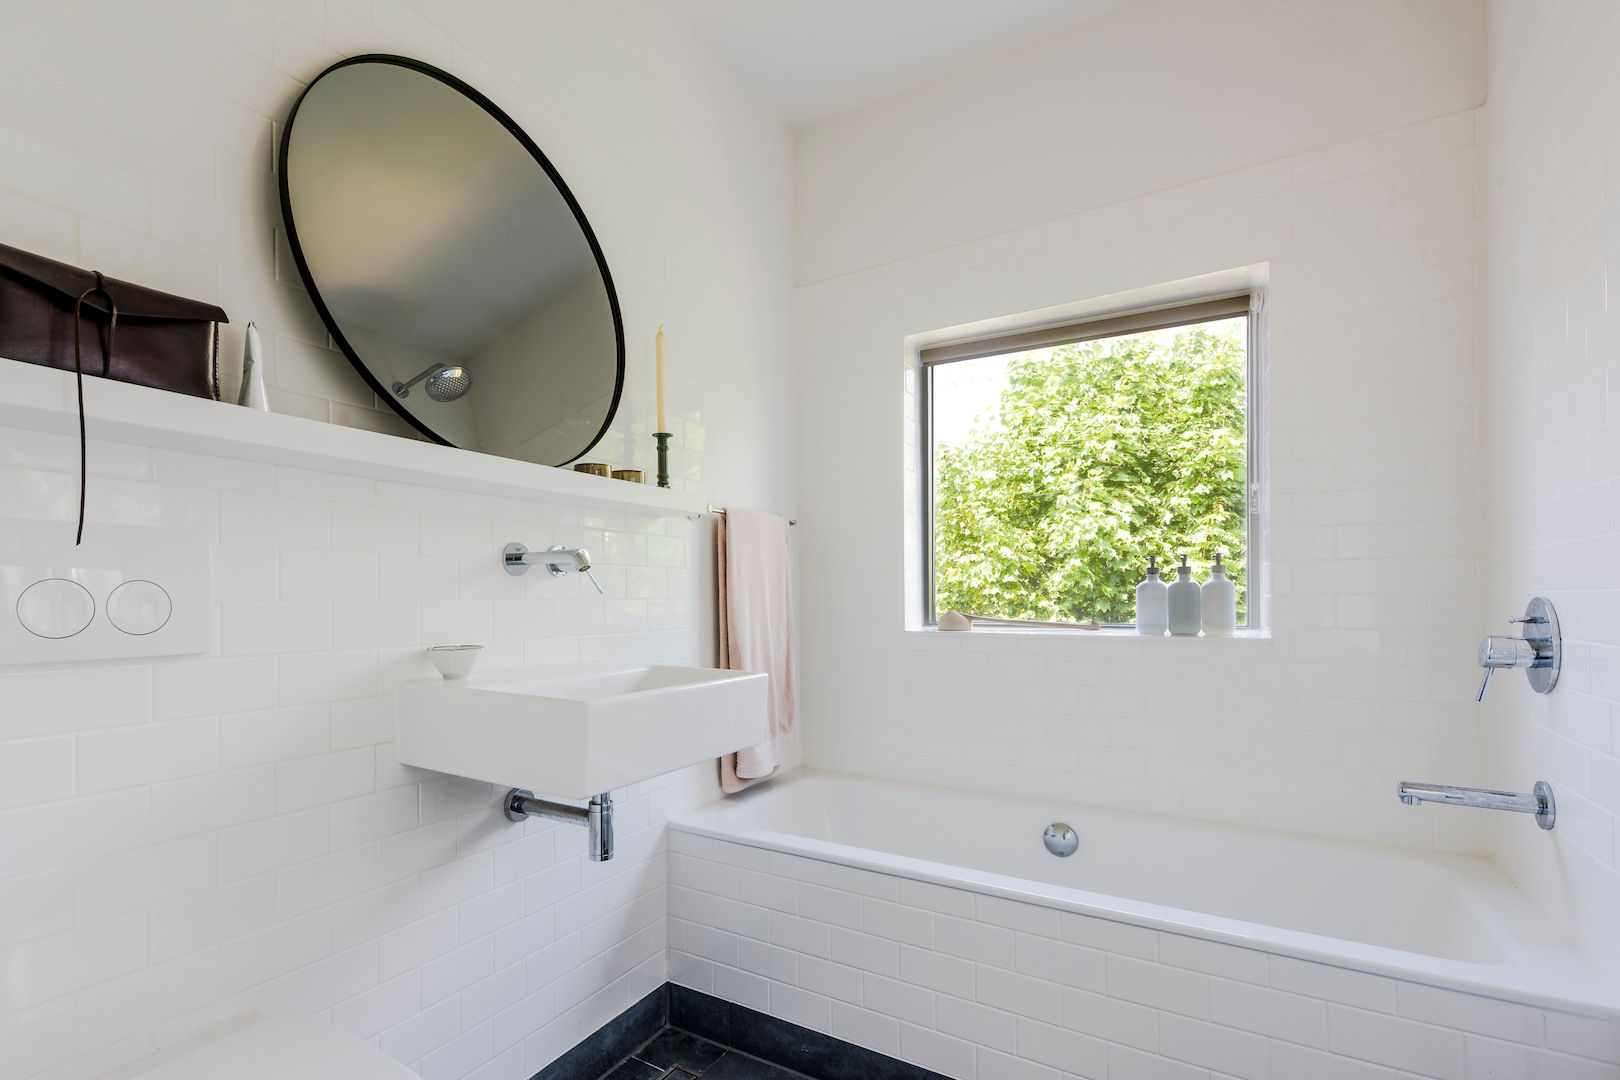 Bathroom homify Modern style bathrooms Tiles small bathroom,white bathroom,bathroom